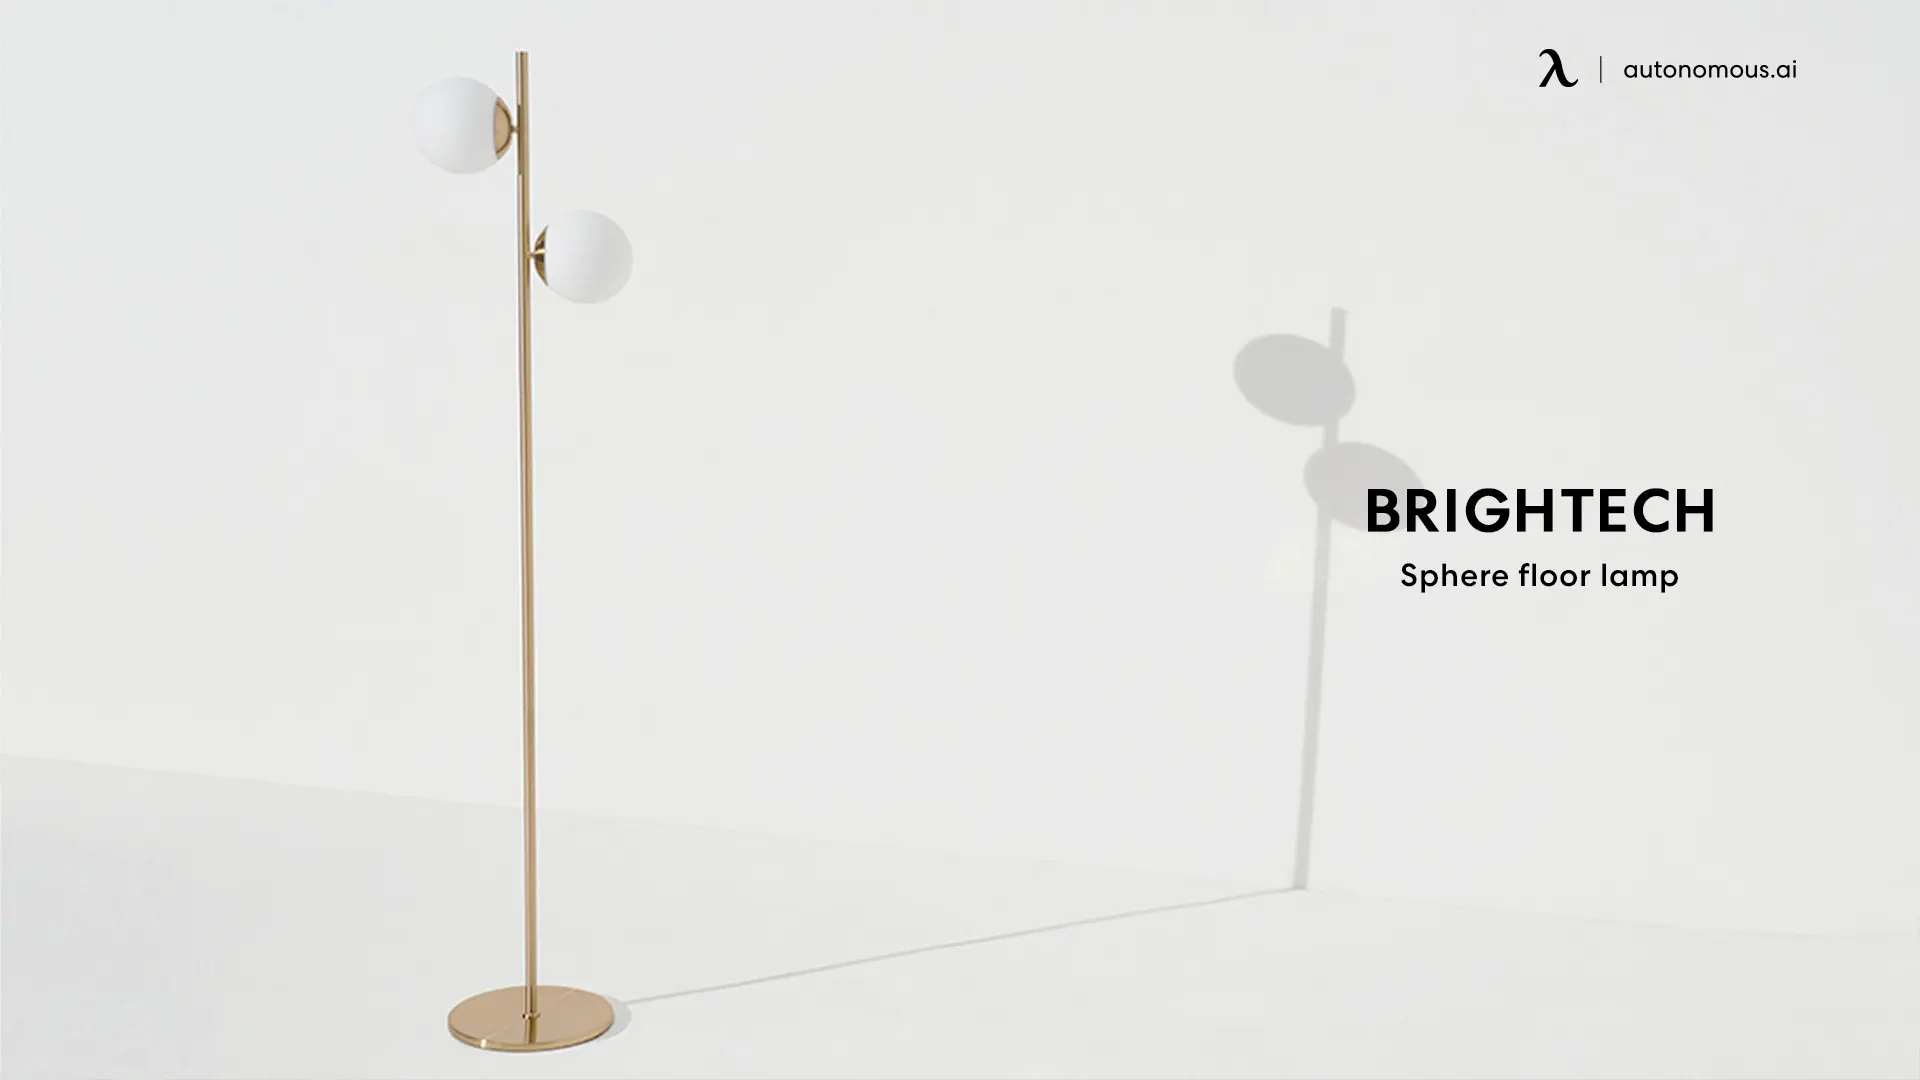 Brightech Sphere Floor Lamp